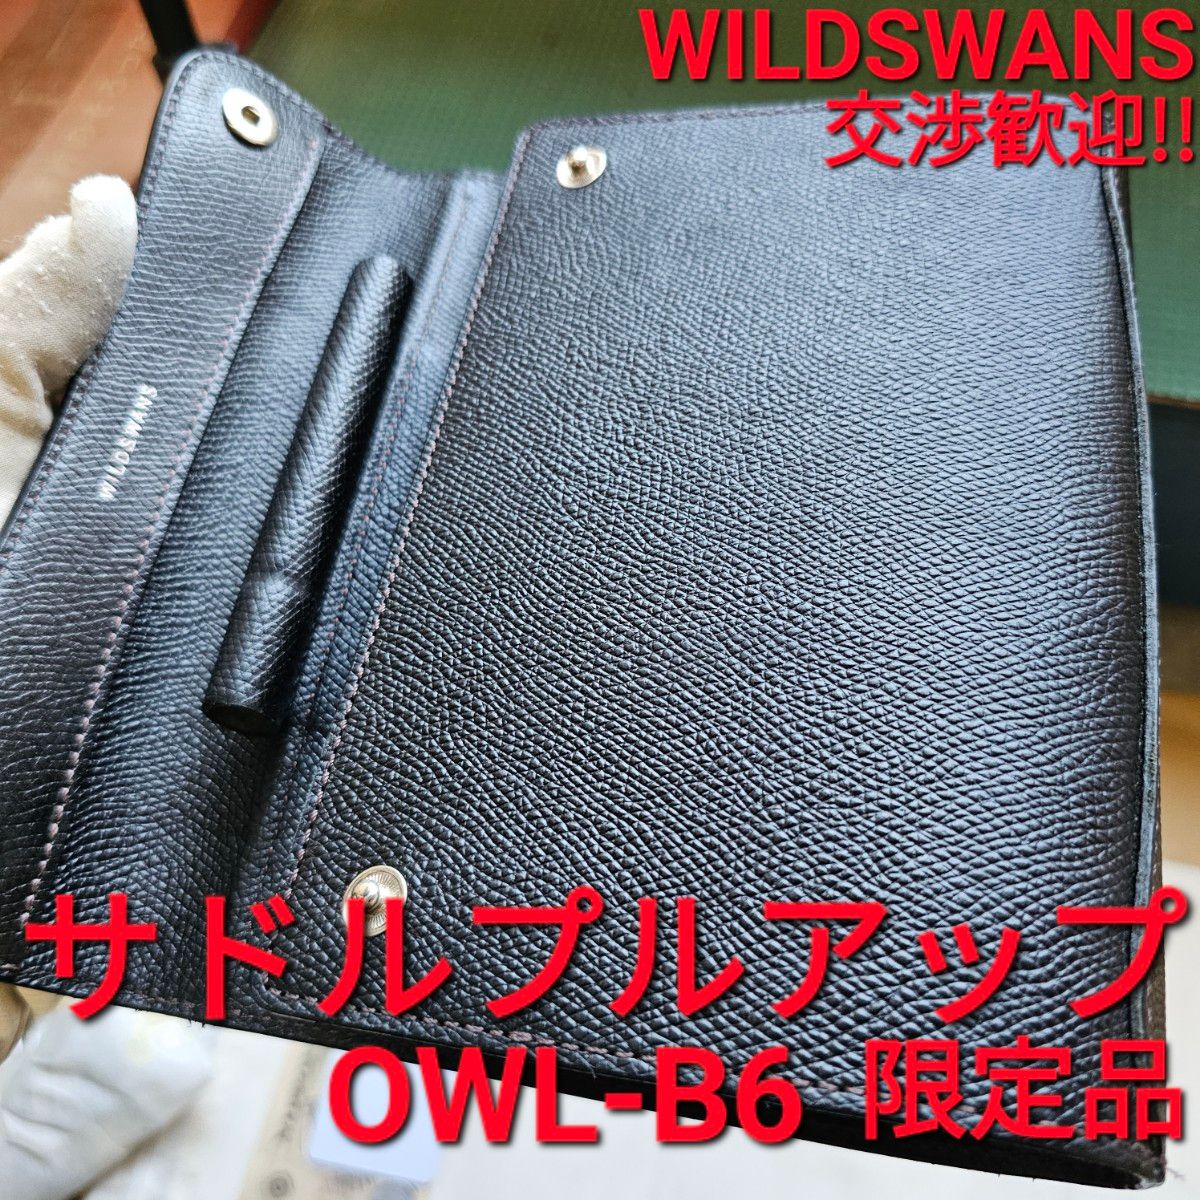 WS 交渉可 オウル OWL オウルB6 OWL-b6 WILDSWANS サドルプルアップ